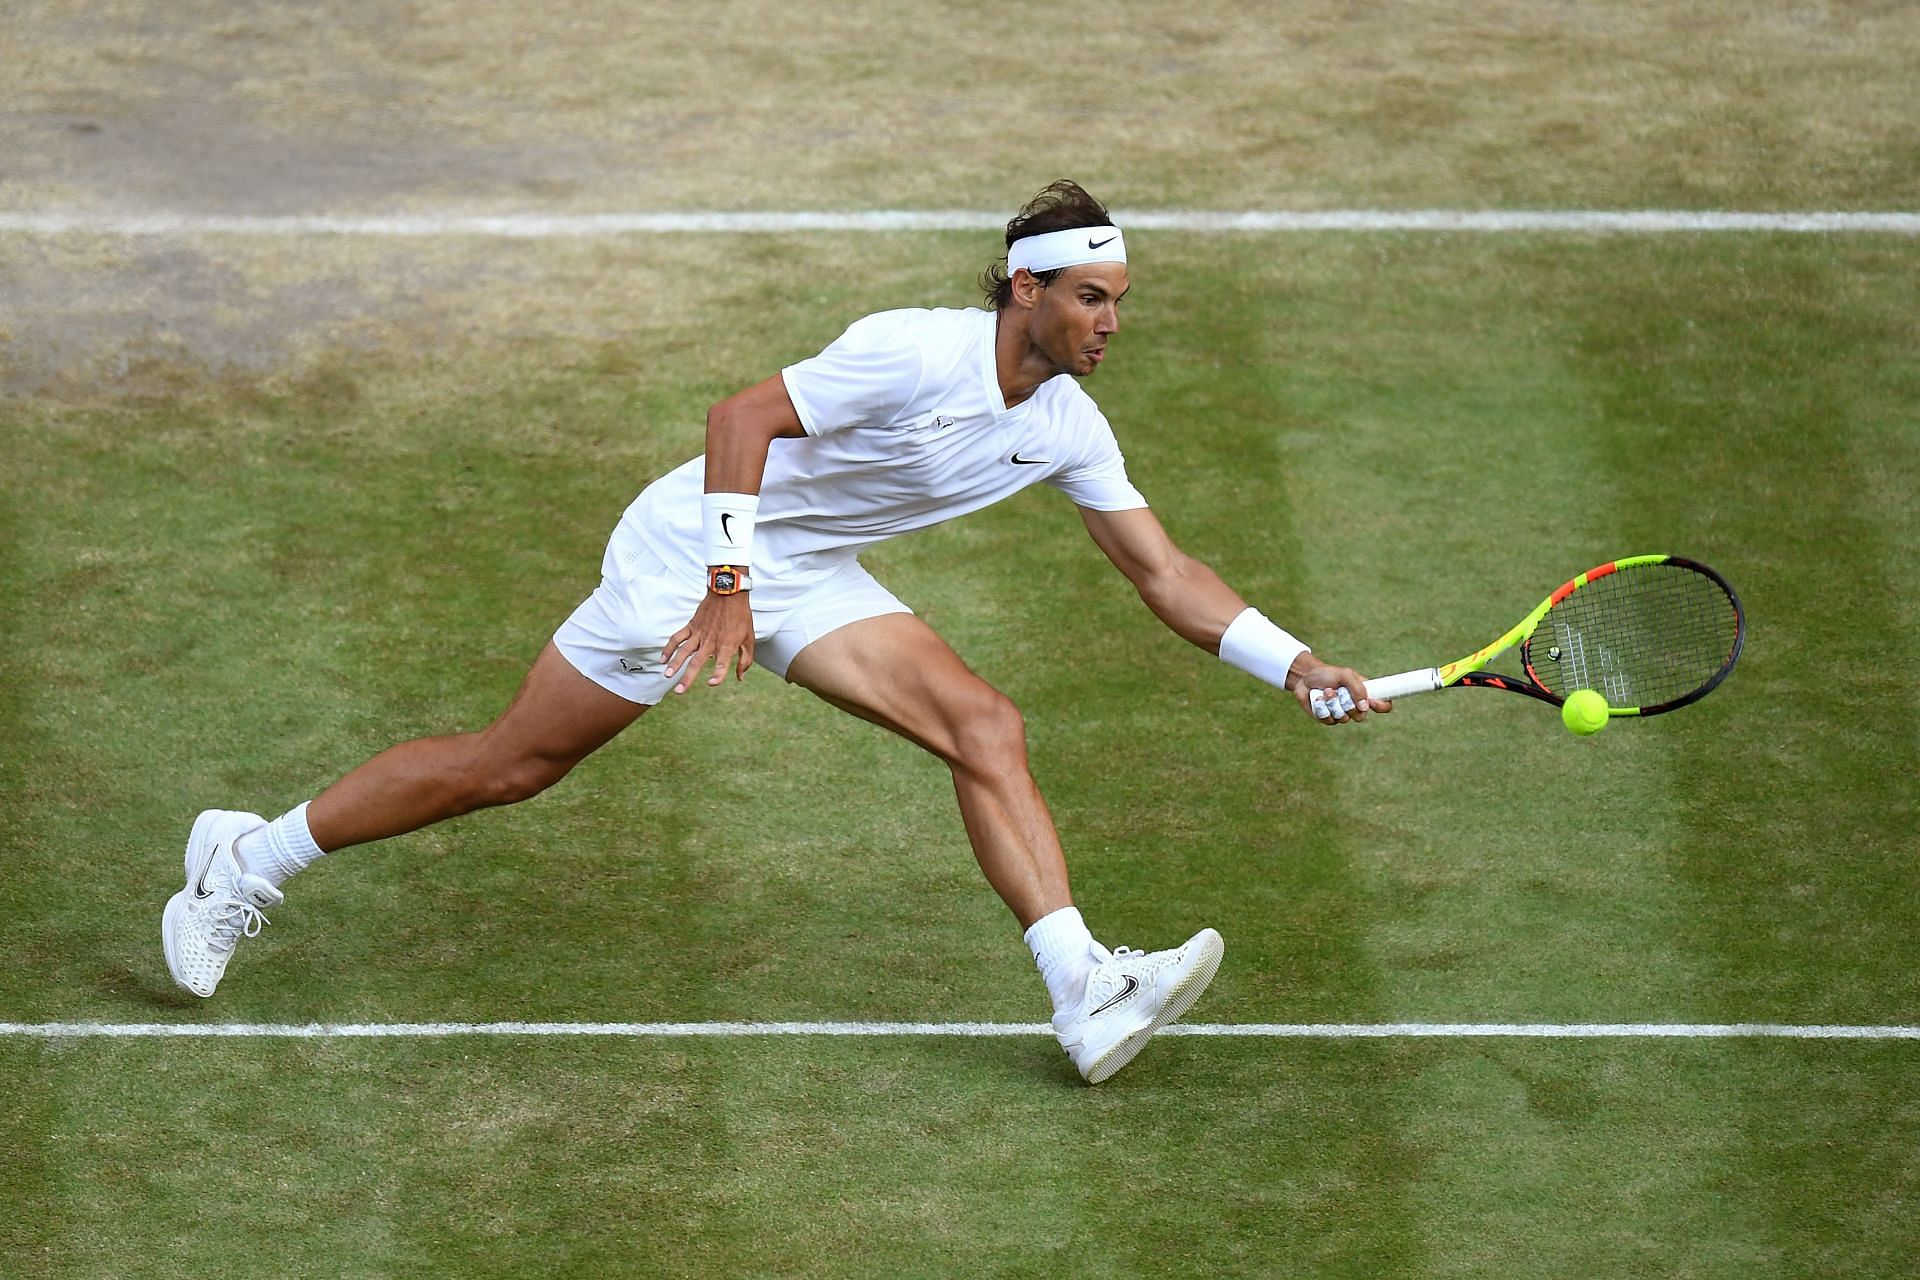 Rafael Nadal at the Championships - Wimbledon 2019